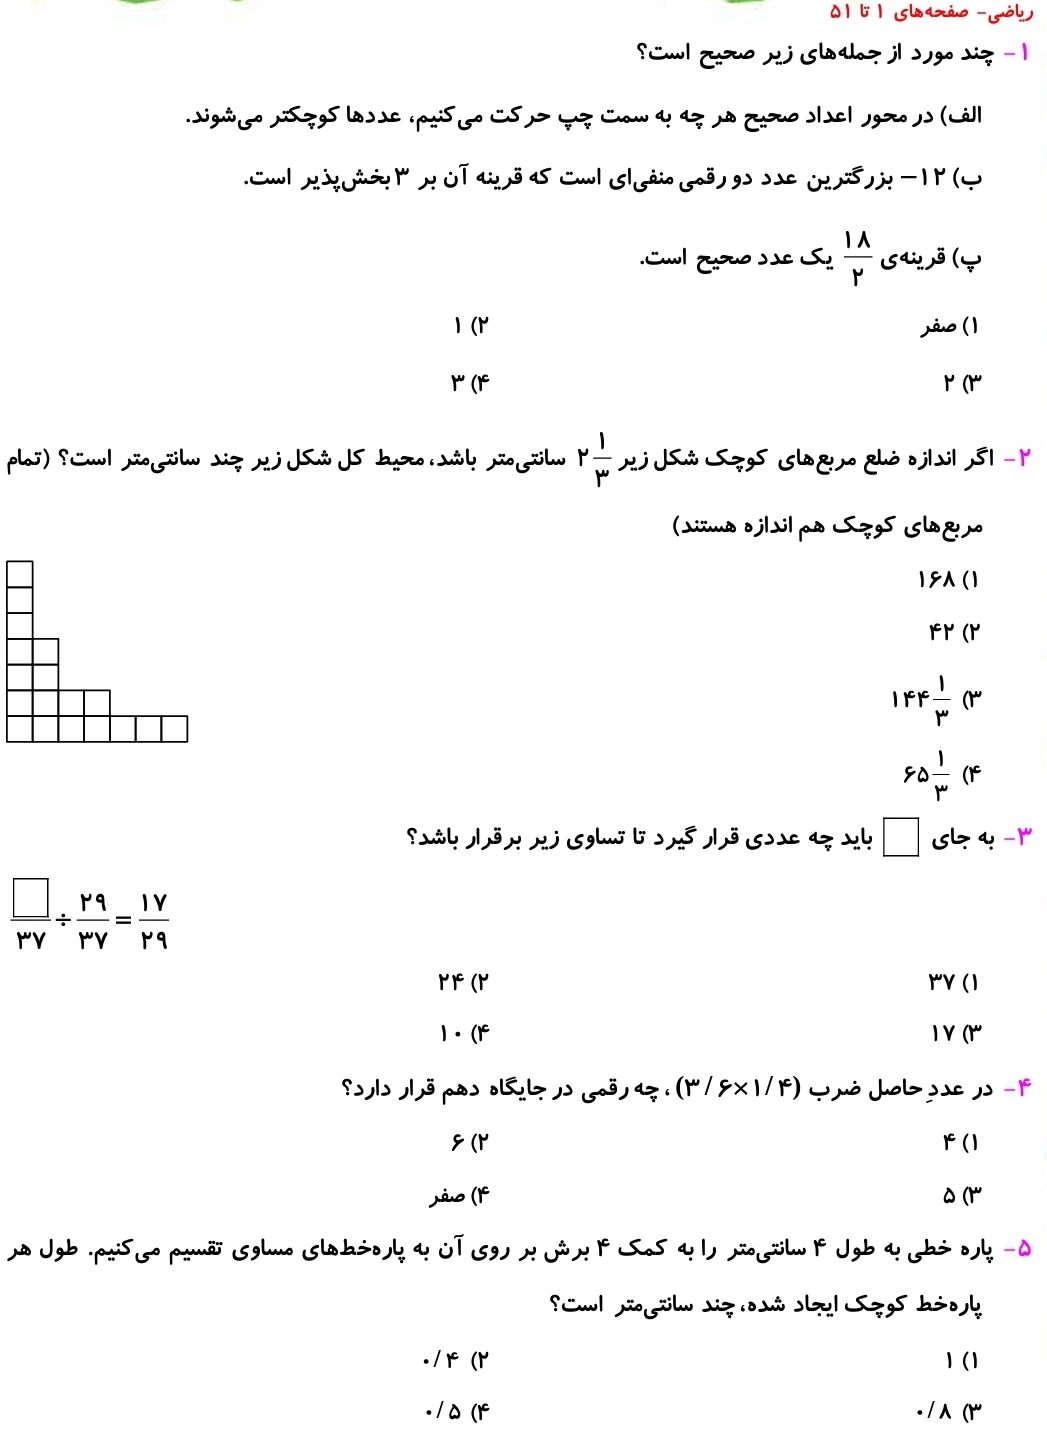 صفحه‌های 1 تا 51 _ نمونه سوال ریاضی ششم _فاطمه حلاجیان